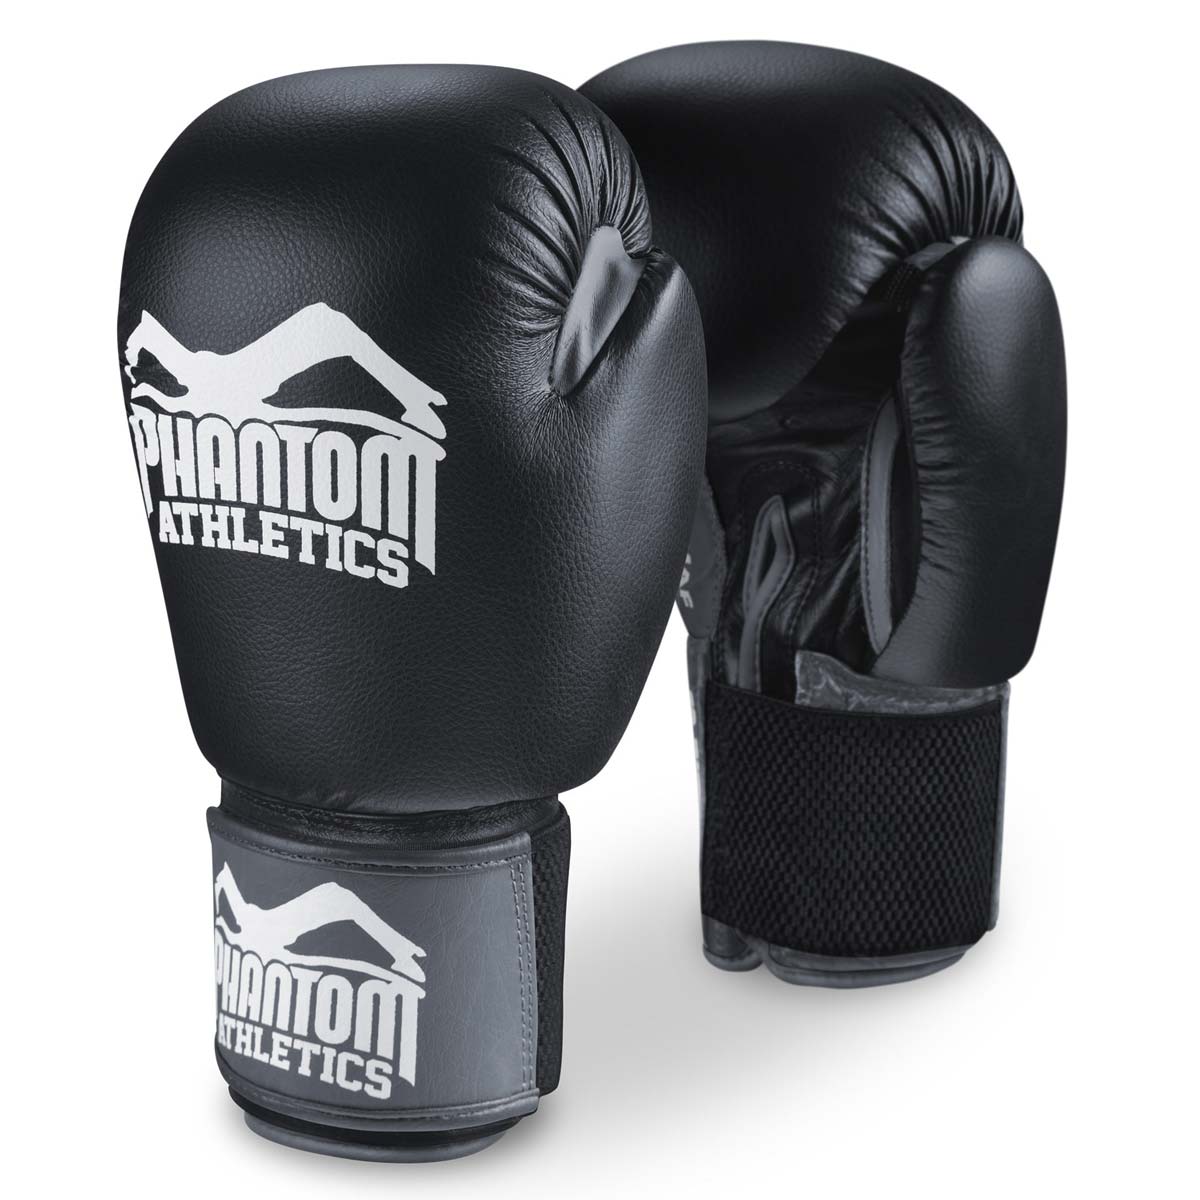 Les gants de boxe Phantom Ultra pour l'entraînement, le sparring et la compétition.